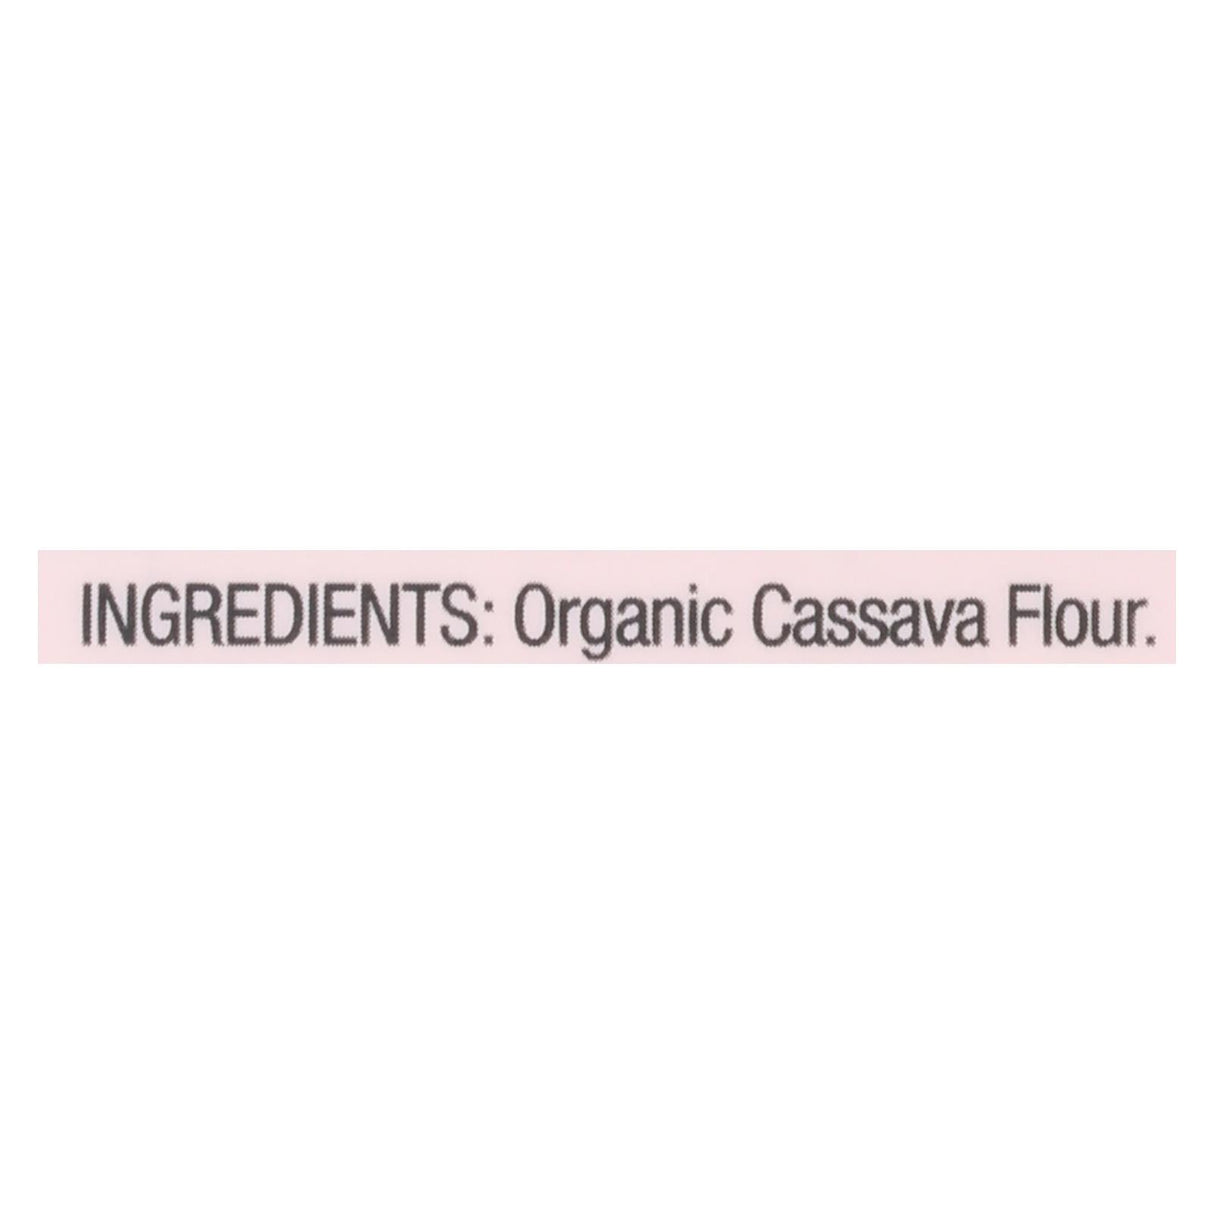 Pamela's Products Cassava Flour - Case of 6 - 14 Oz. Bags - Cozy Farm 